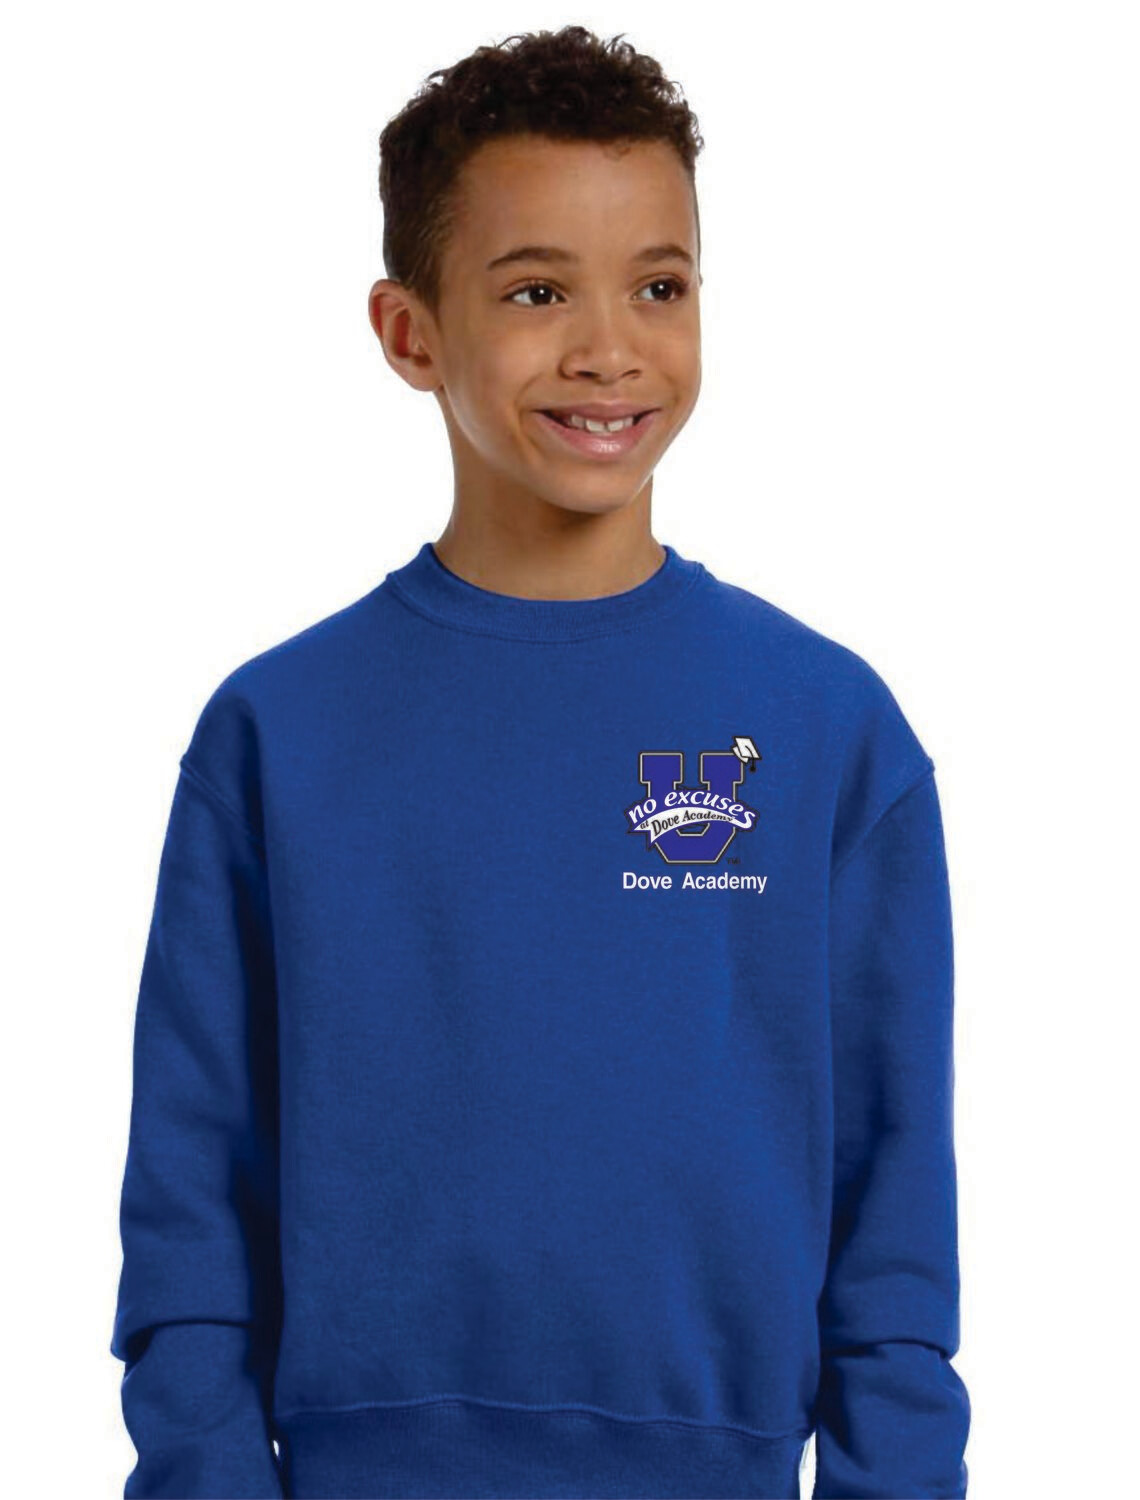 Dove Academy Sweatshirt